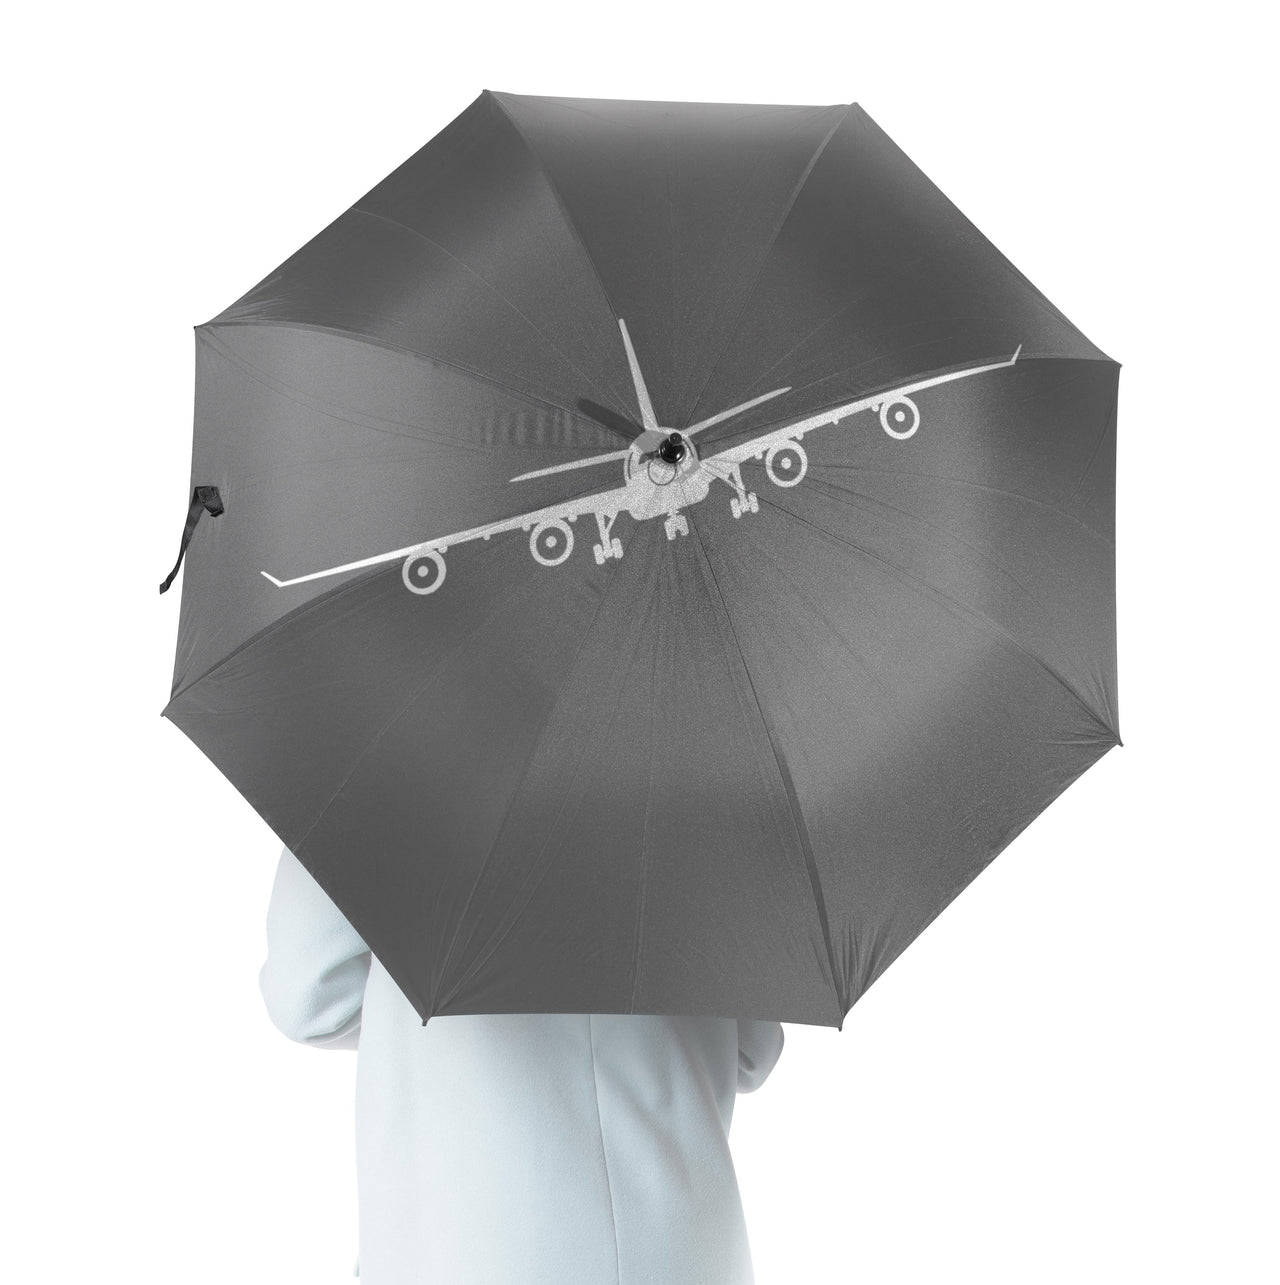 Airbus A340 Silhouette Designed Umbrella